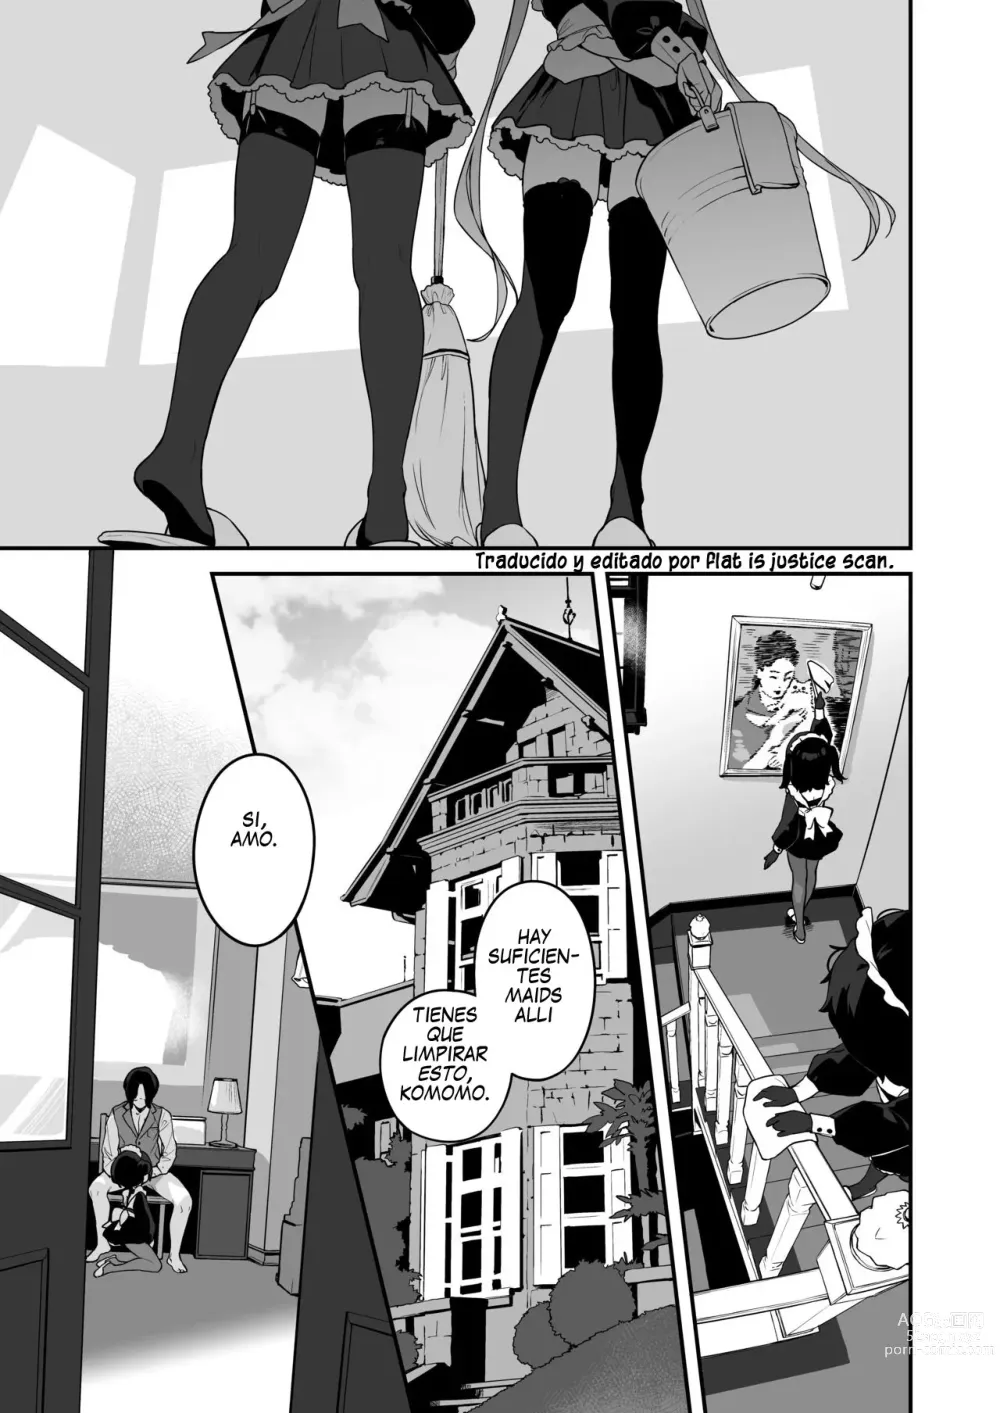 Page 3 of doujinshi Komomo Es Una Loli Maid Vertedero De Semen Con Todos Sus Agujeros Solo Para Su Amo